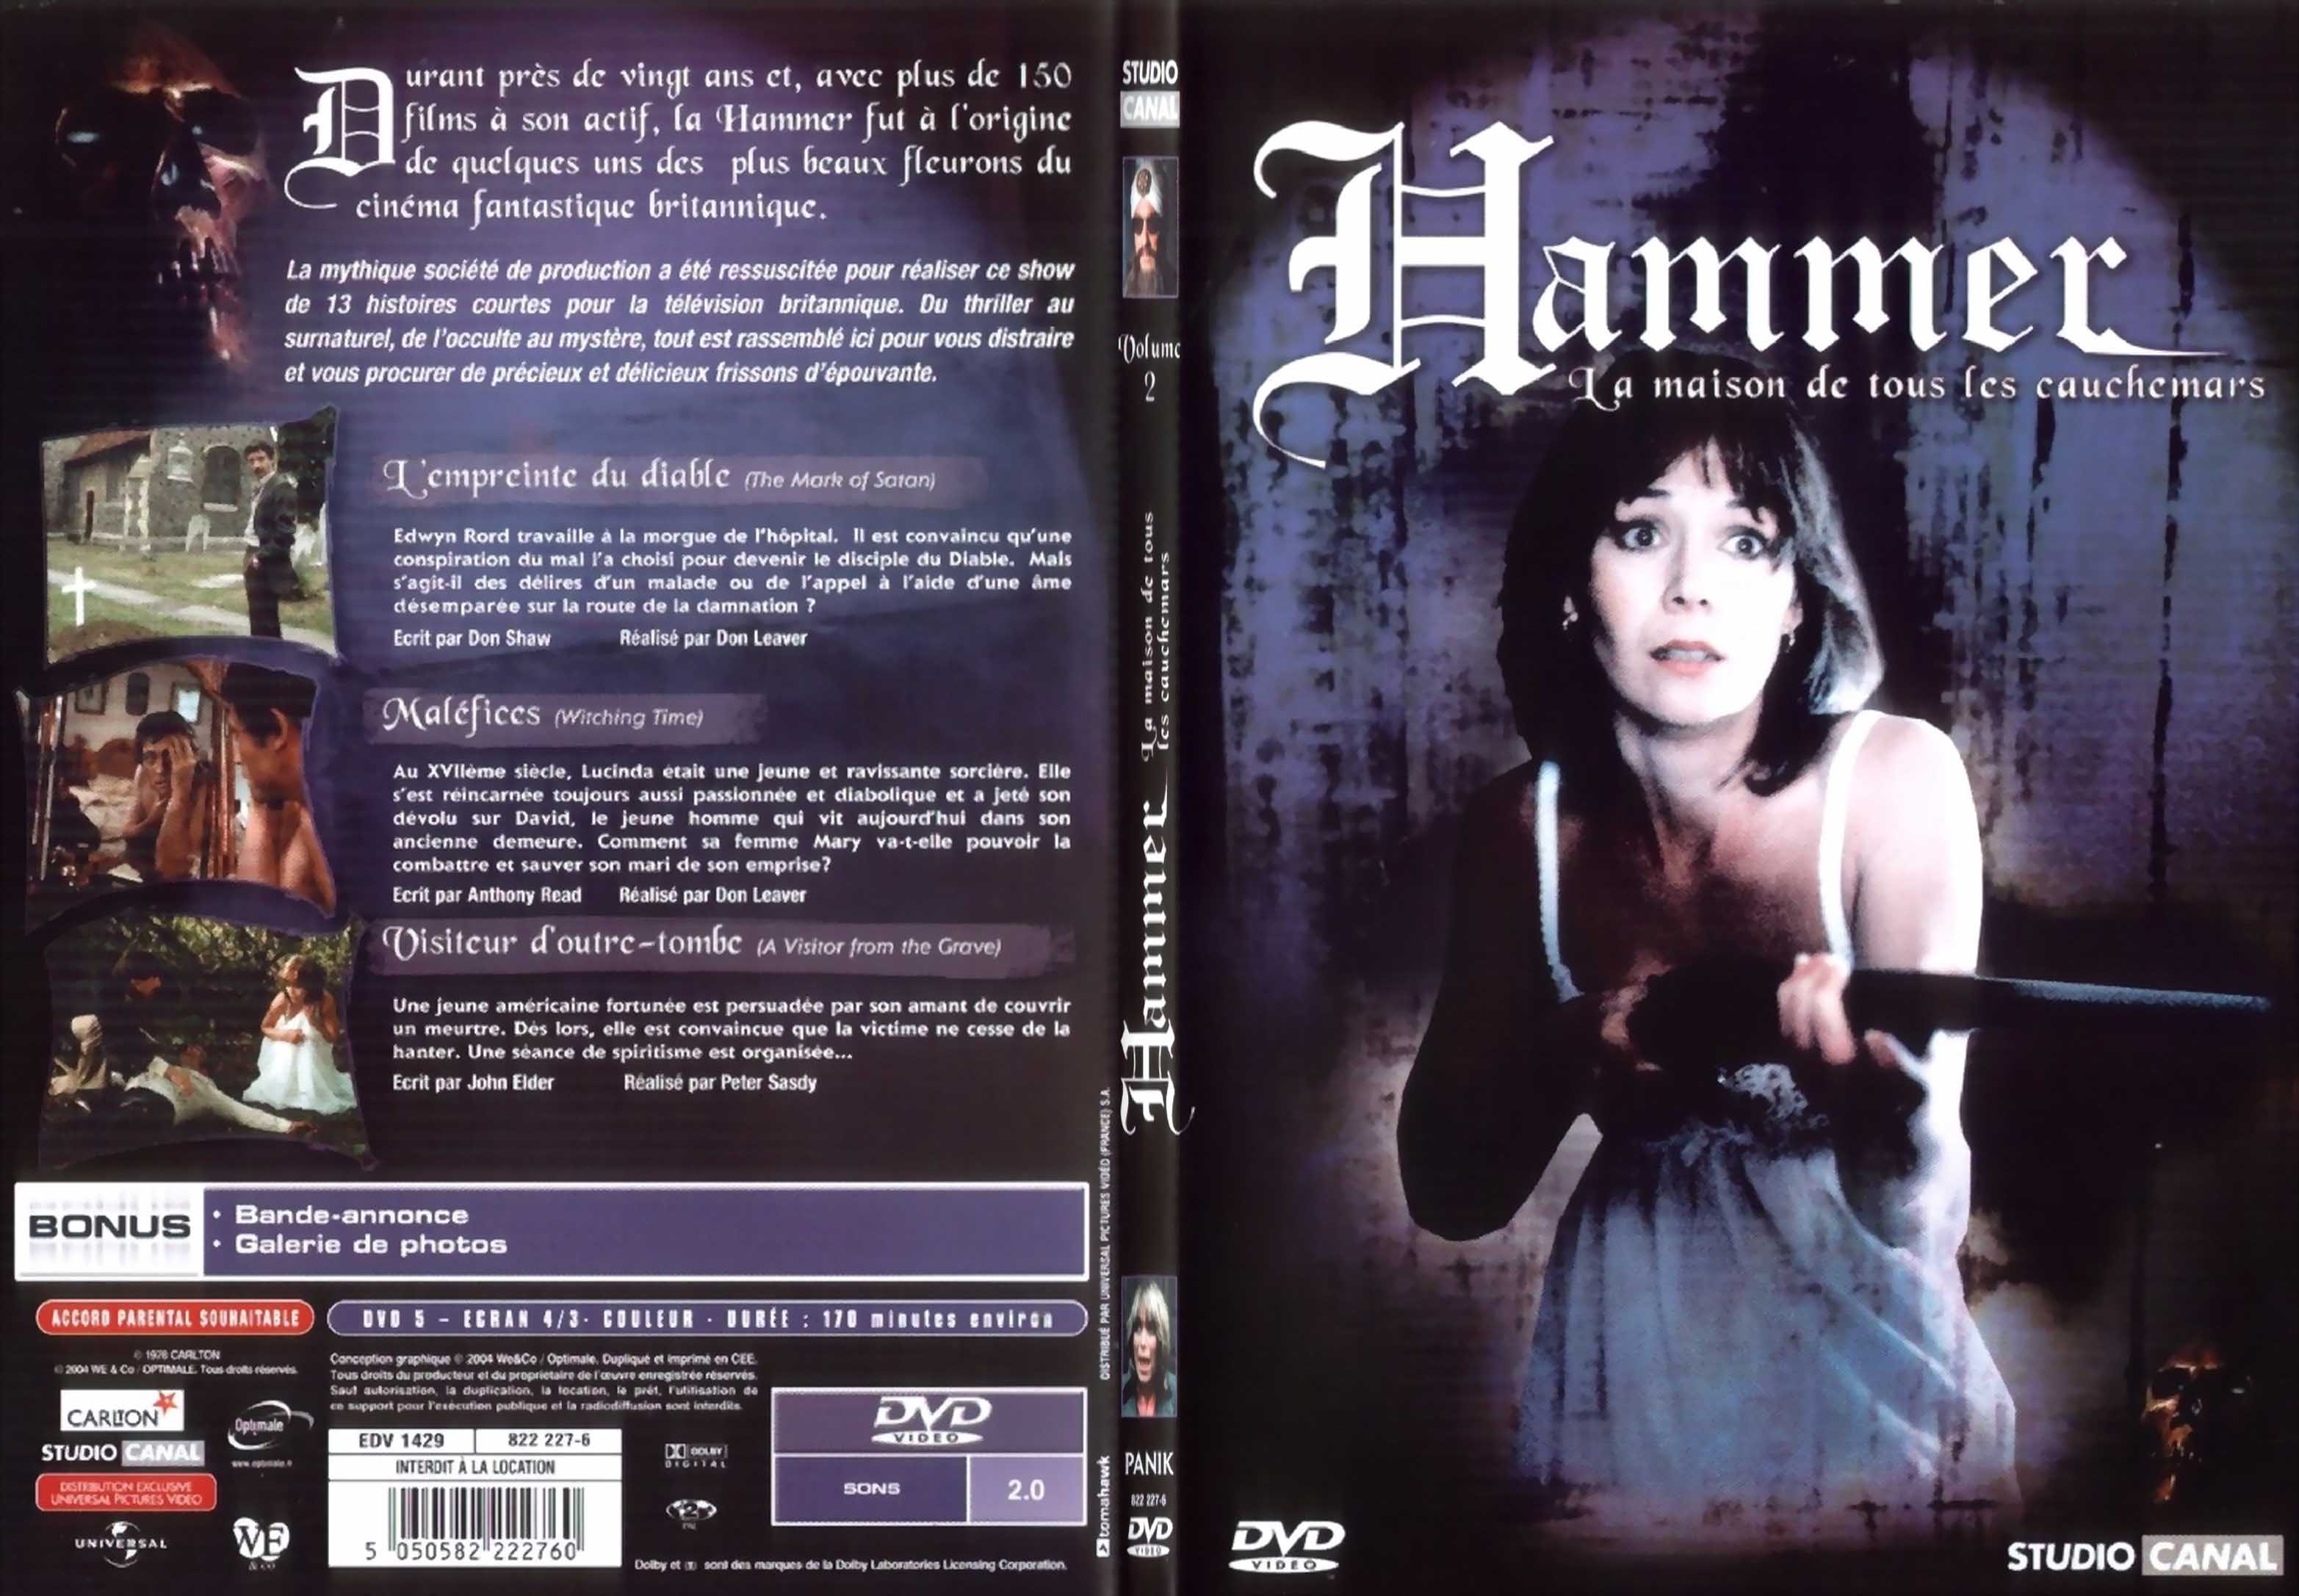 Jaquette DVD Hammer la maison de tous les cauchemars vol 2 - SLIM